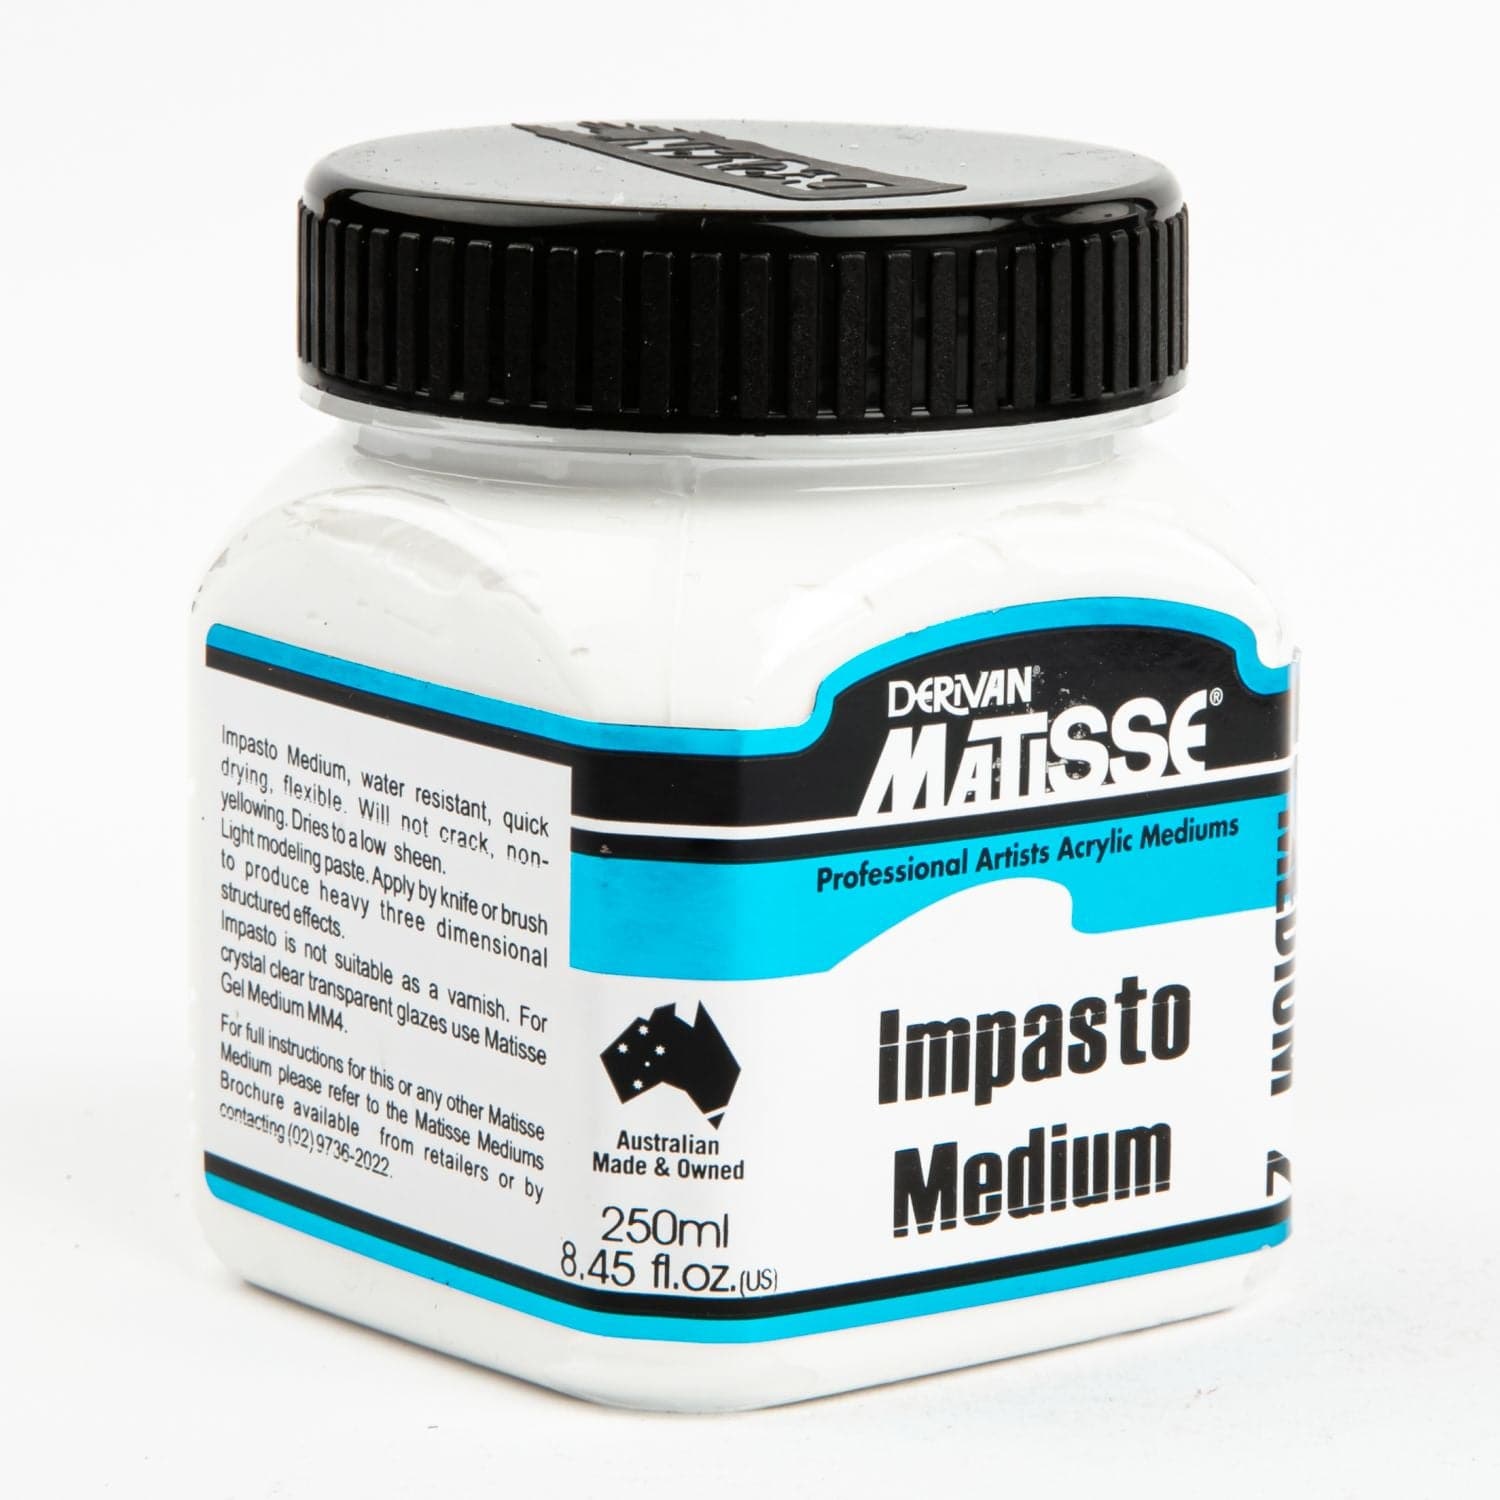 Buy the best Matisse Medium Mm2 Impasto Medium 250mL 966